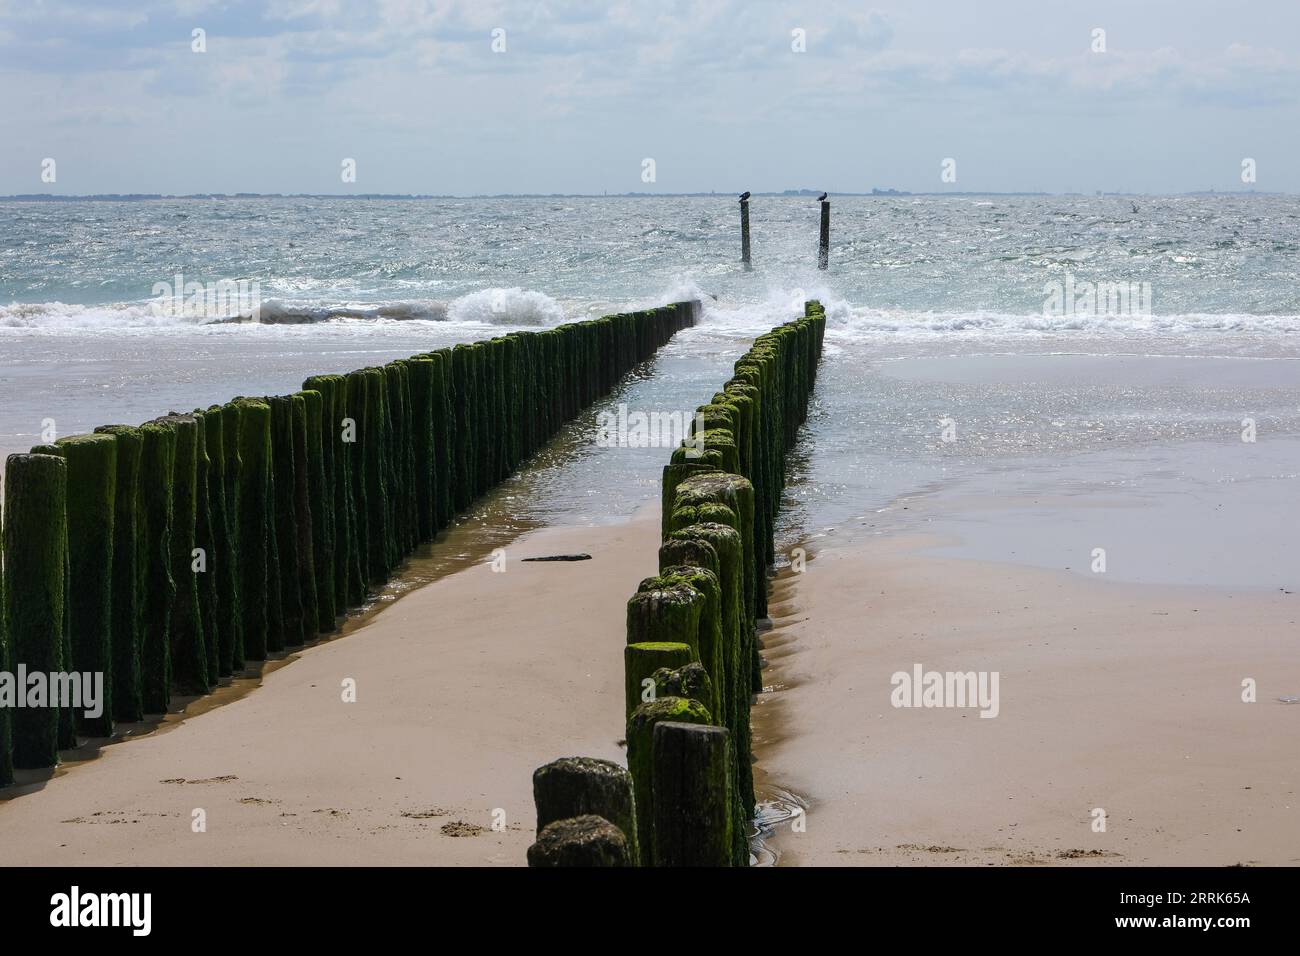 Vlissingen, Neuseeland, Niederlande - Sandstrand mit hölzernen Wellenbrechern, Hafenstadt an der Südküste der Halbinsel Walcheren in der niederländischen Provinz Zeeland. Stockfoto